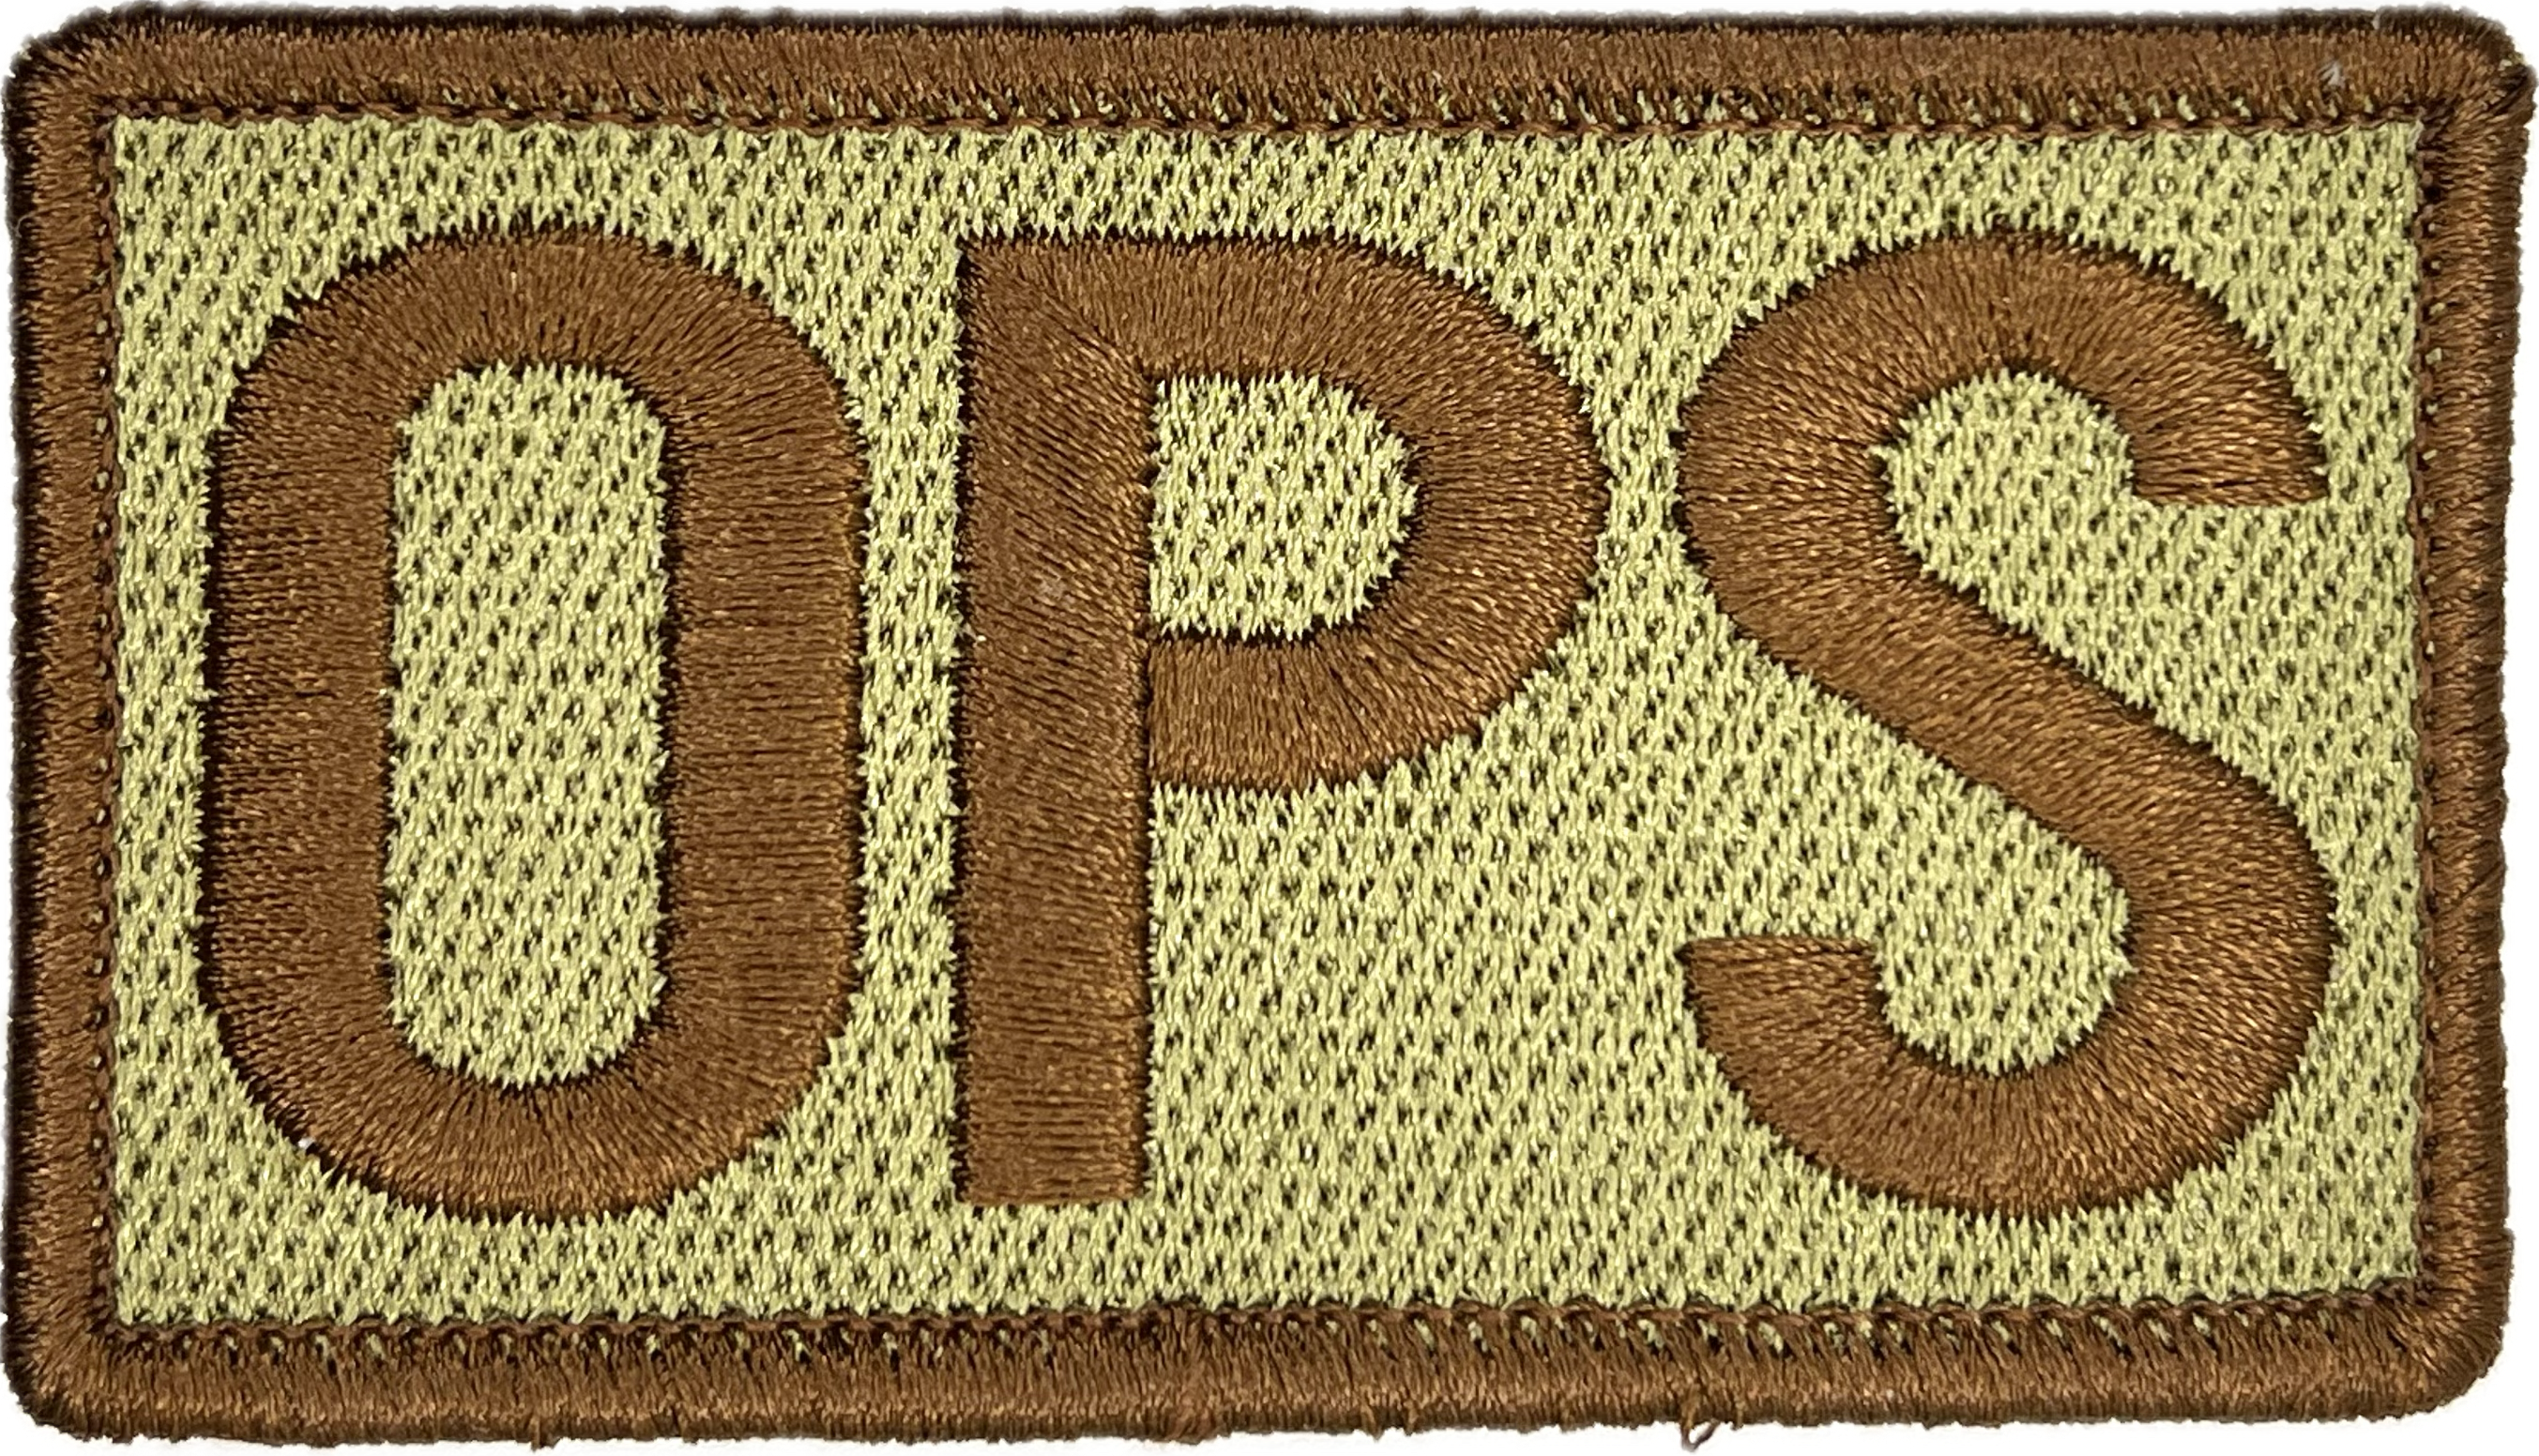 OPS - Duty Identifier Patch